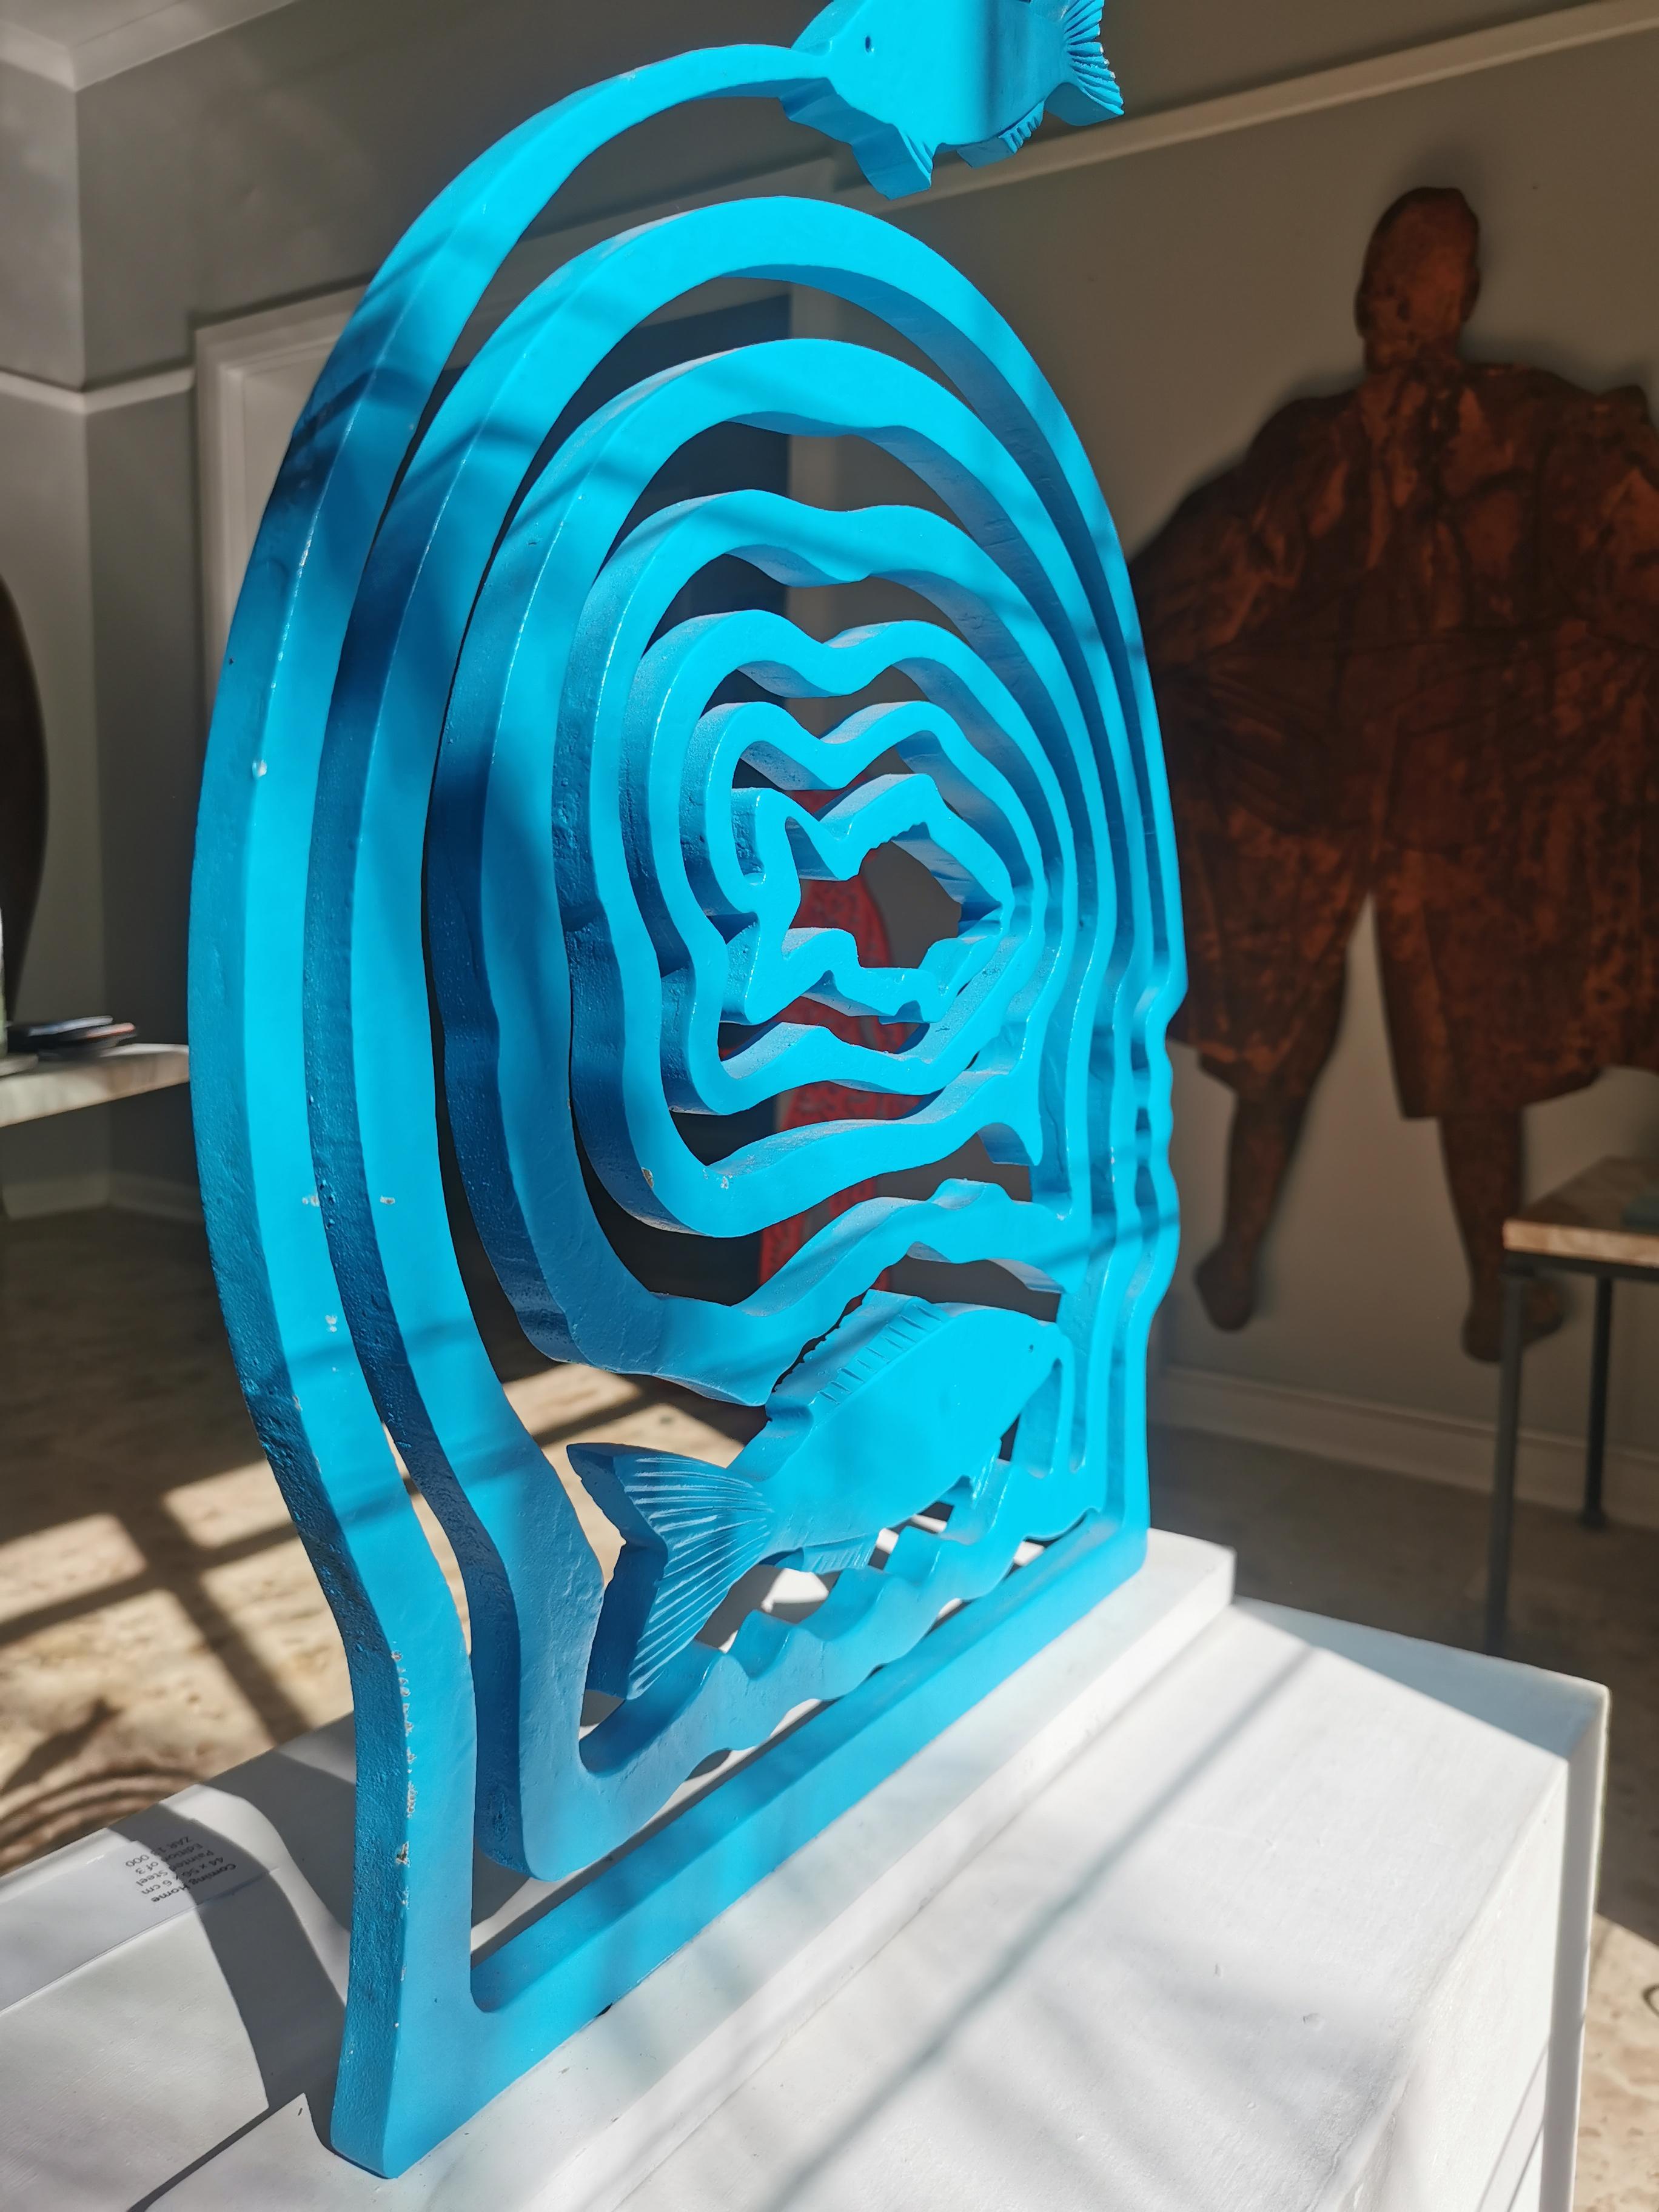 Une édition limitée d'une sculpture en spirale en acier doux revêtue de poudre. Edition 2/3. Disponible en différentes couleurs sur demande.